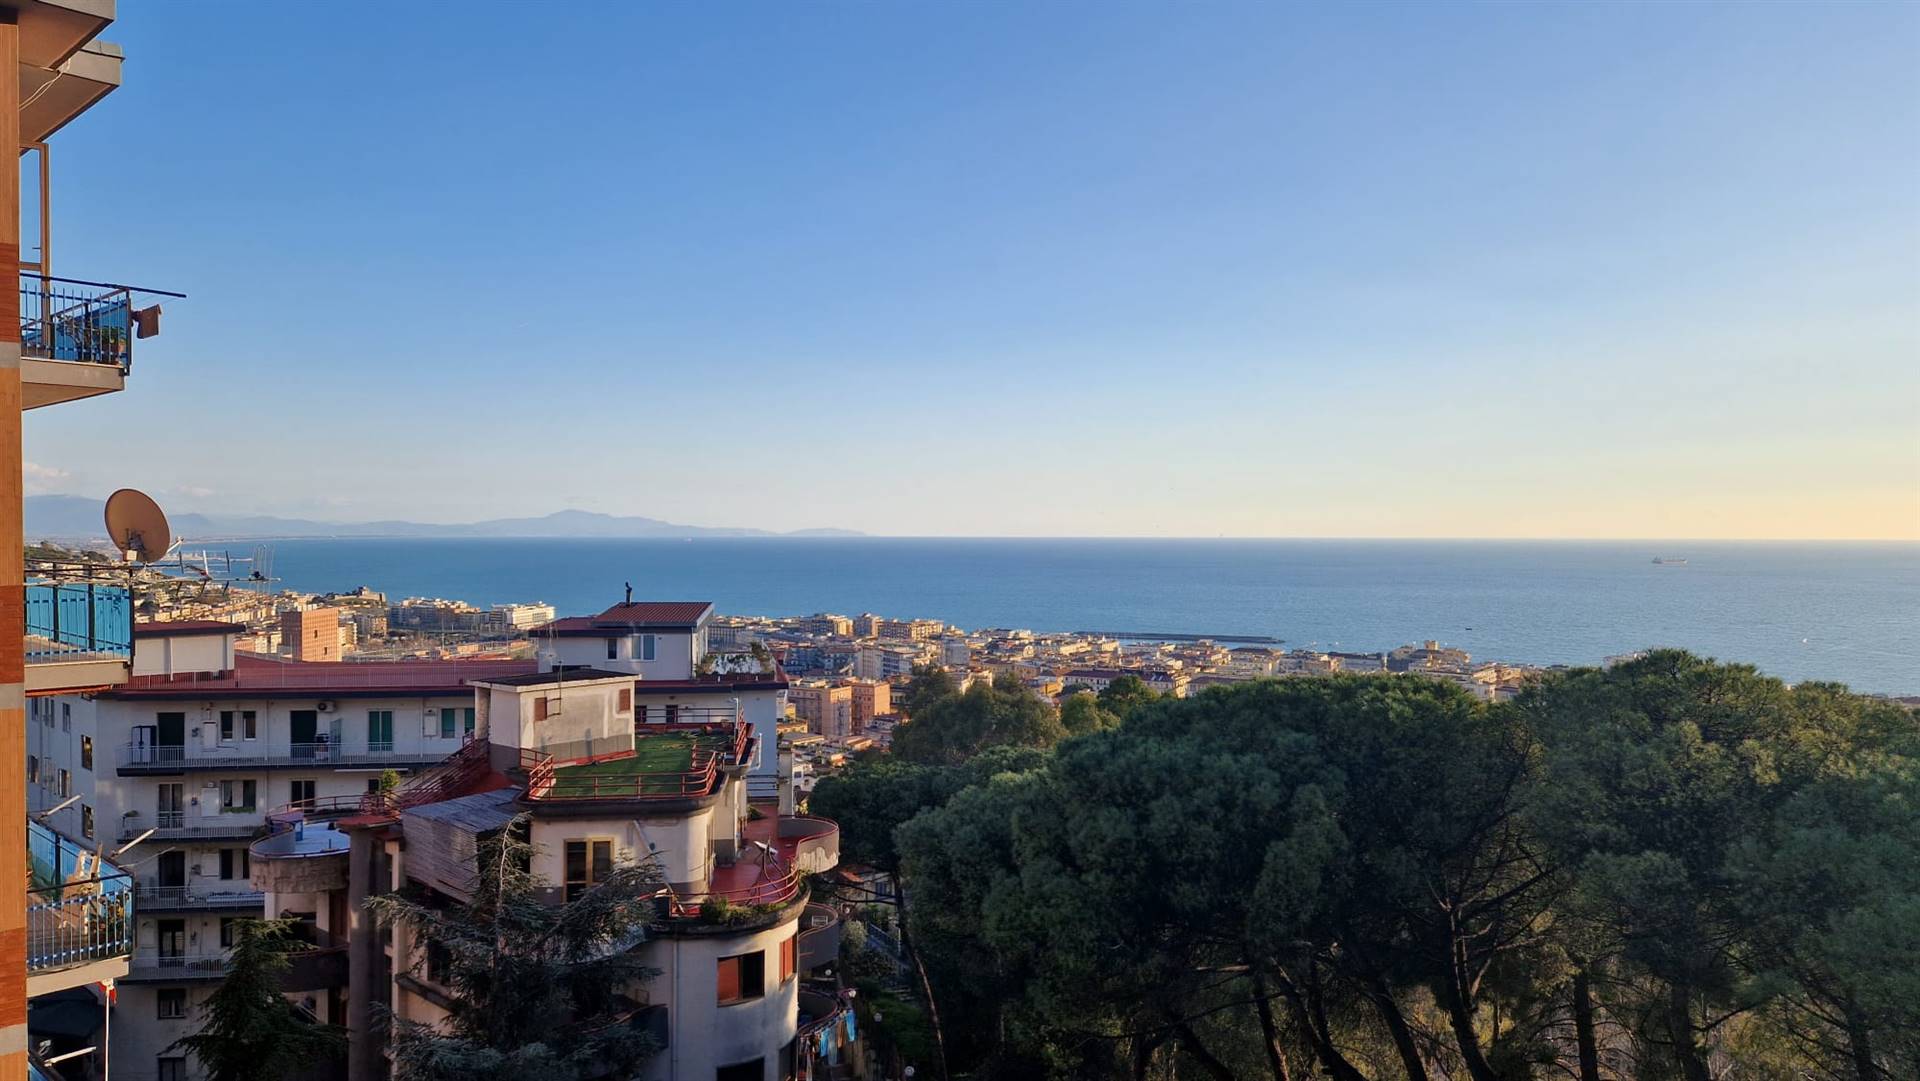 Situato in Via Seripando, Salerno, proponiamo la vendita di un appartamento panoramico. L'immobile si trova al terzo piano di un edificio dotato di 